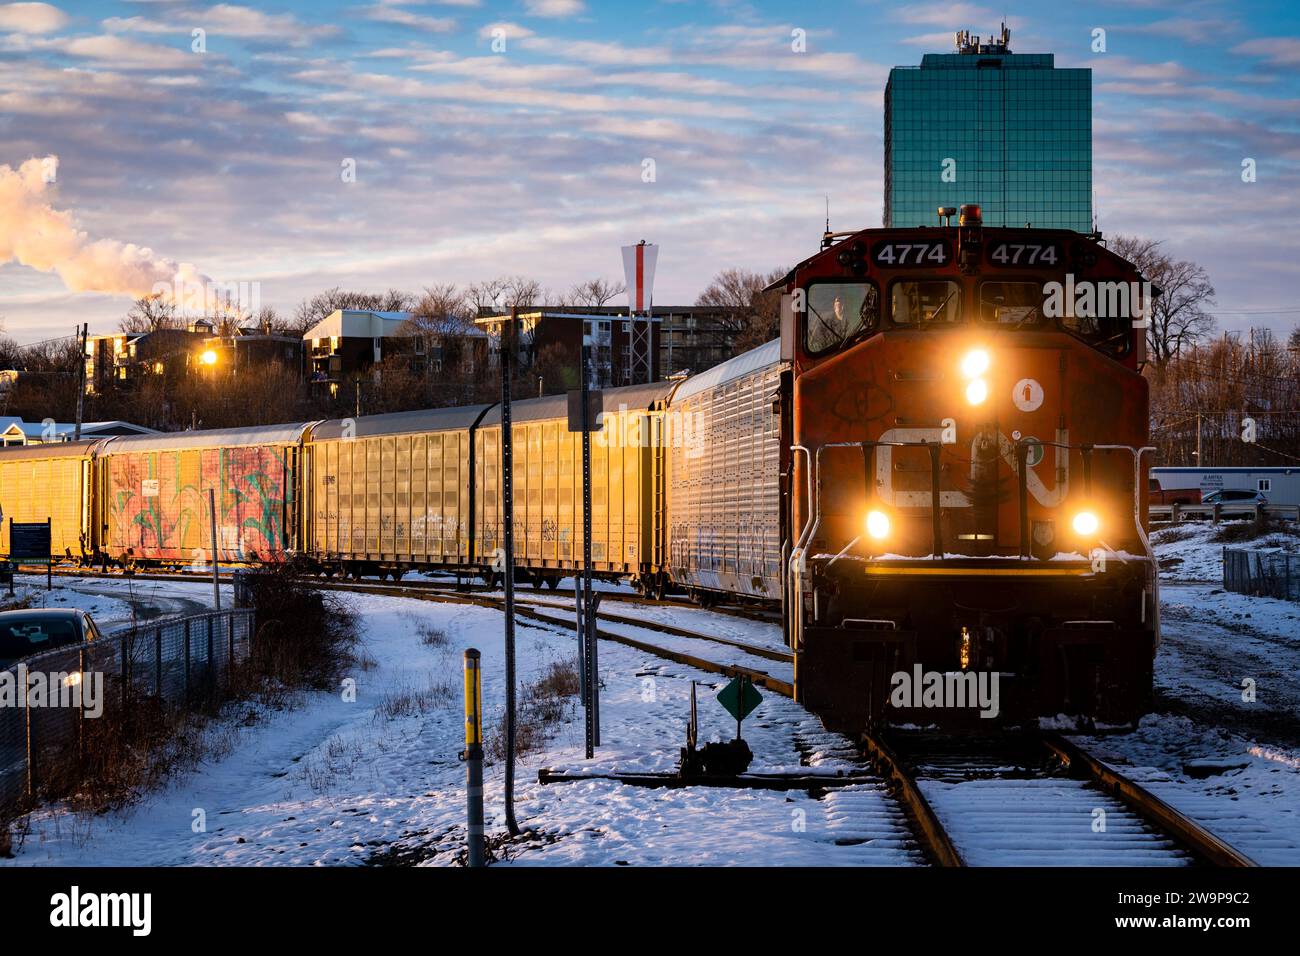 Locomotiva e vagoni ferroviari CN Rail in un deposito di smistamento al crepuscolo a Dartmouth, nuova Scozia, Canada. Foto Stock